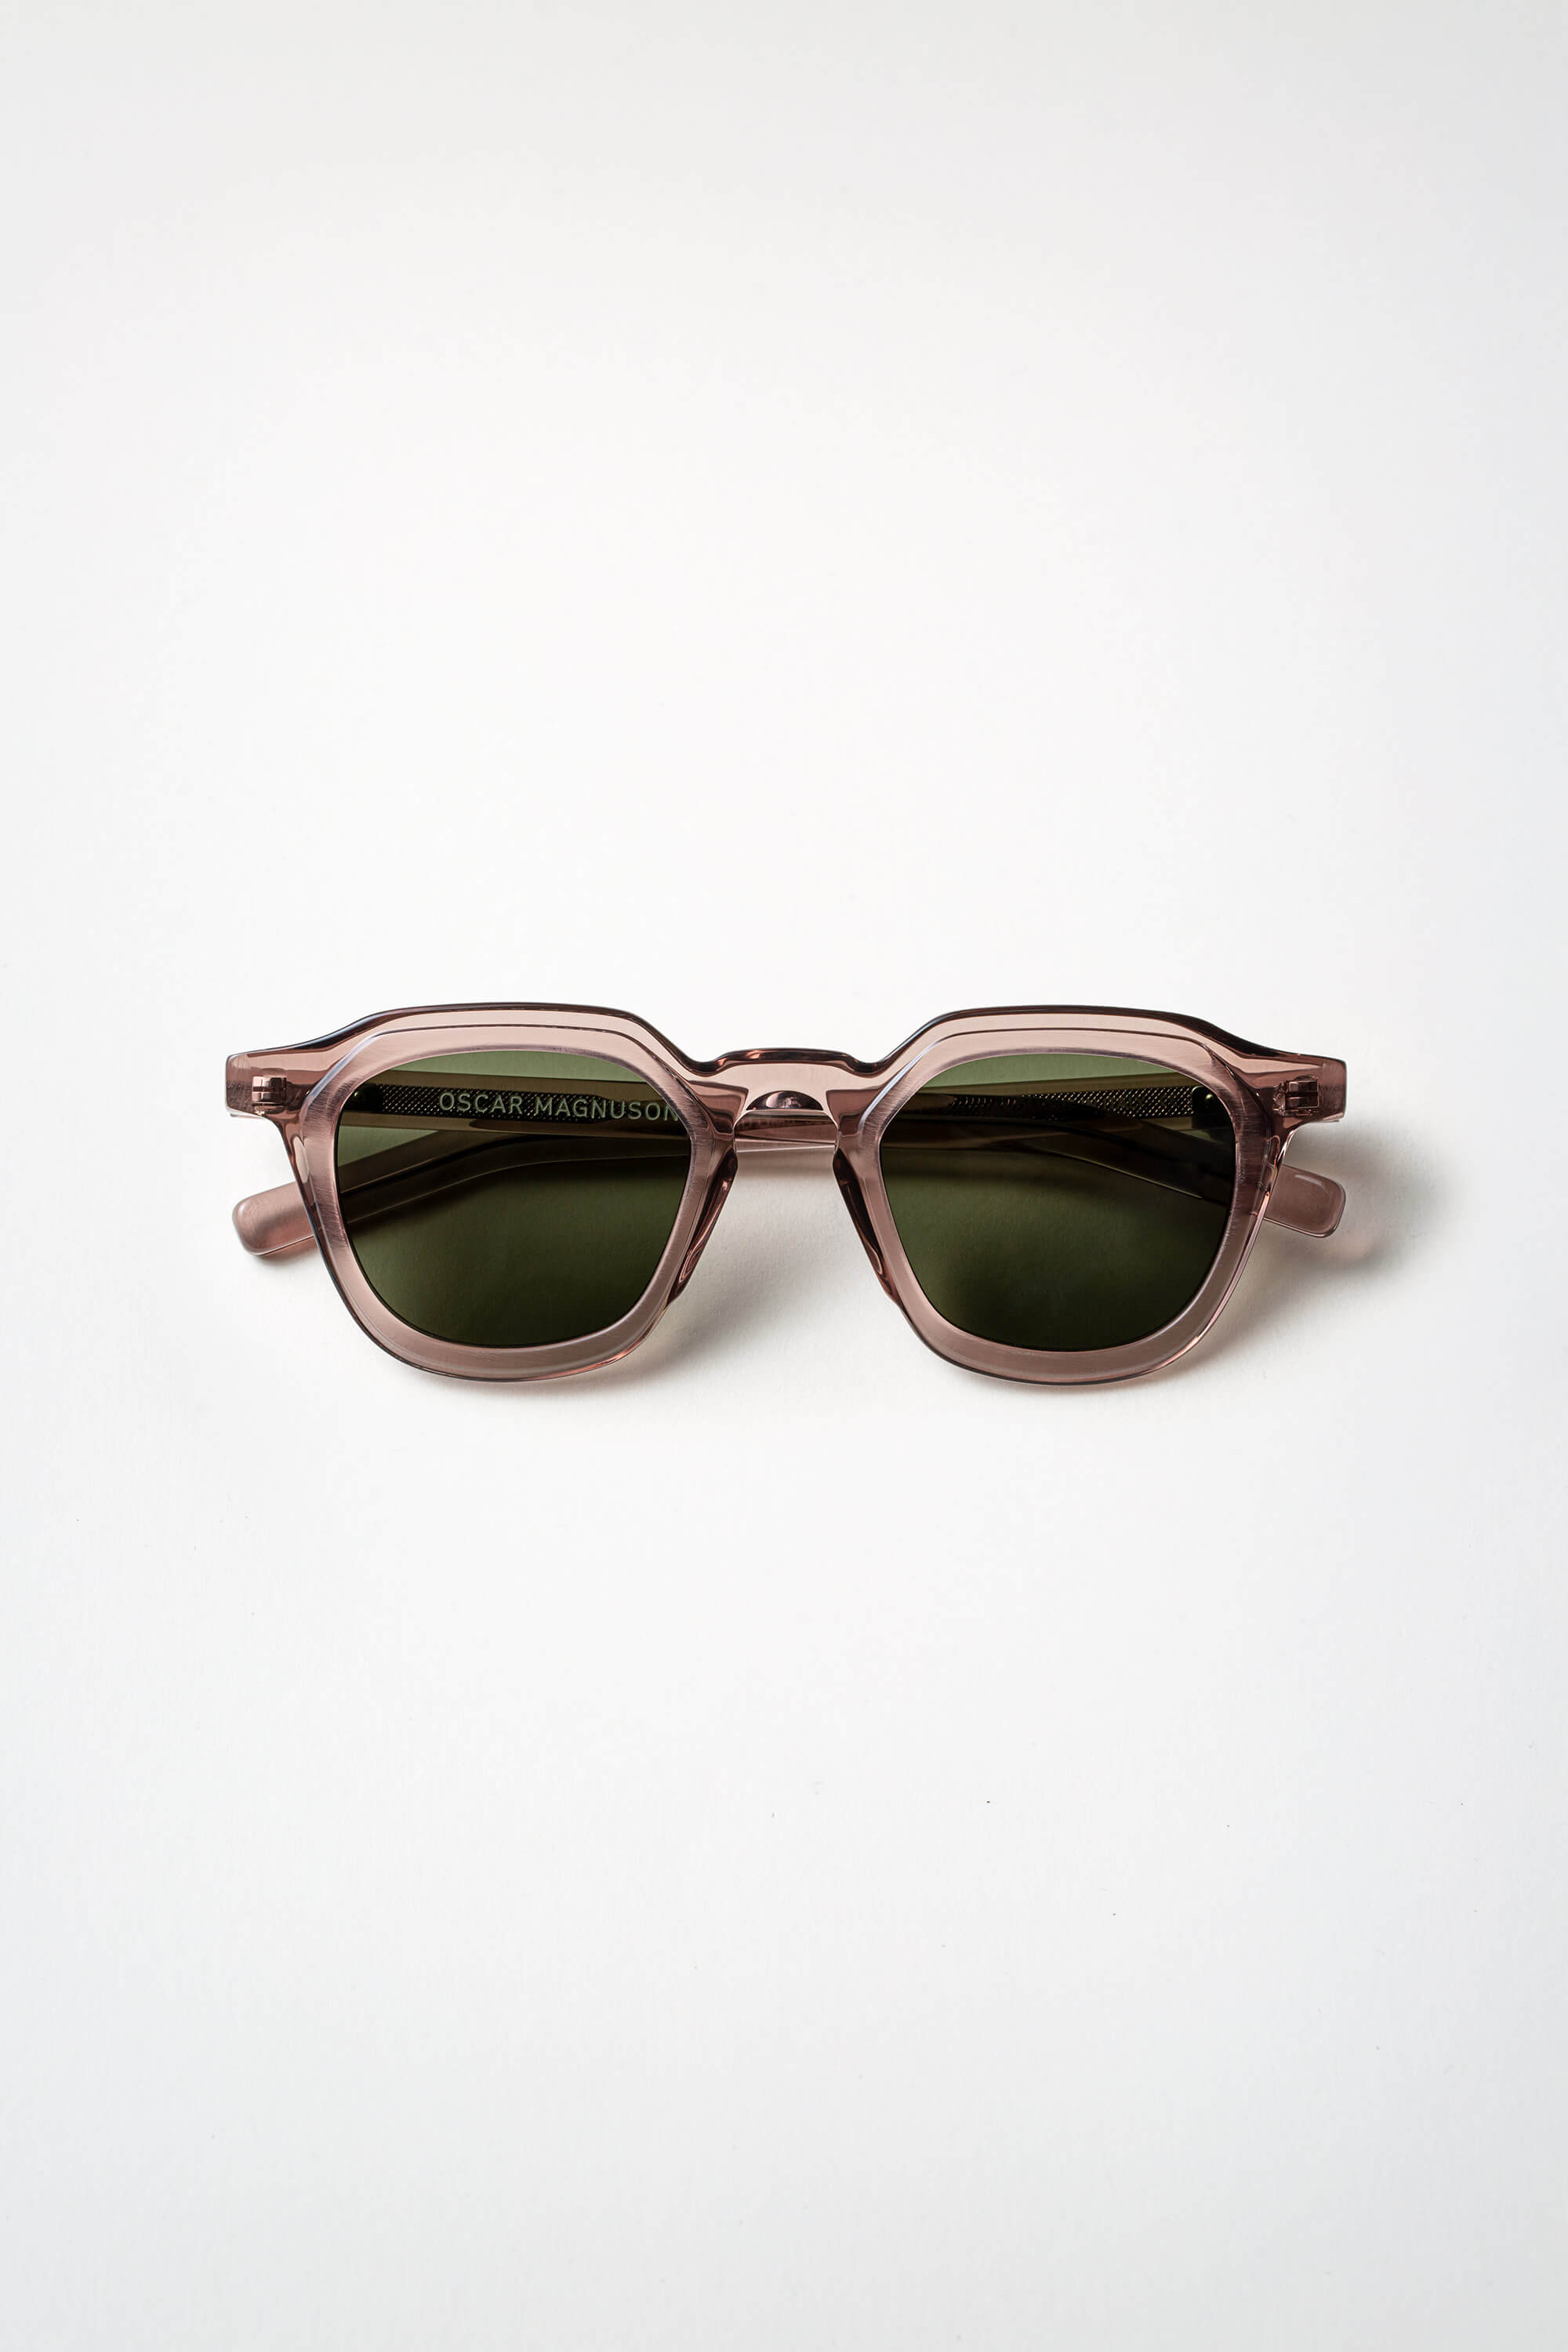 shop sun – Oscar Magnuson Spectacles